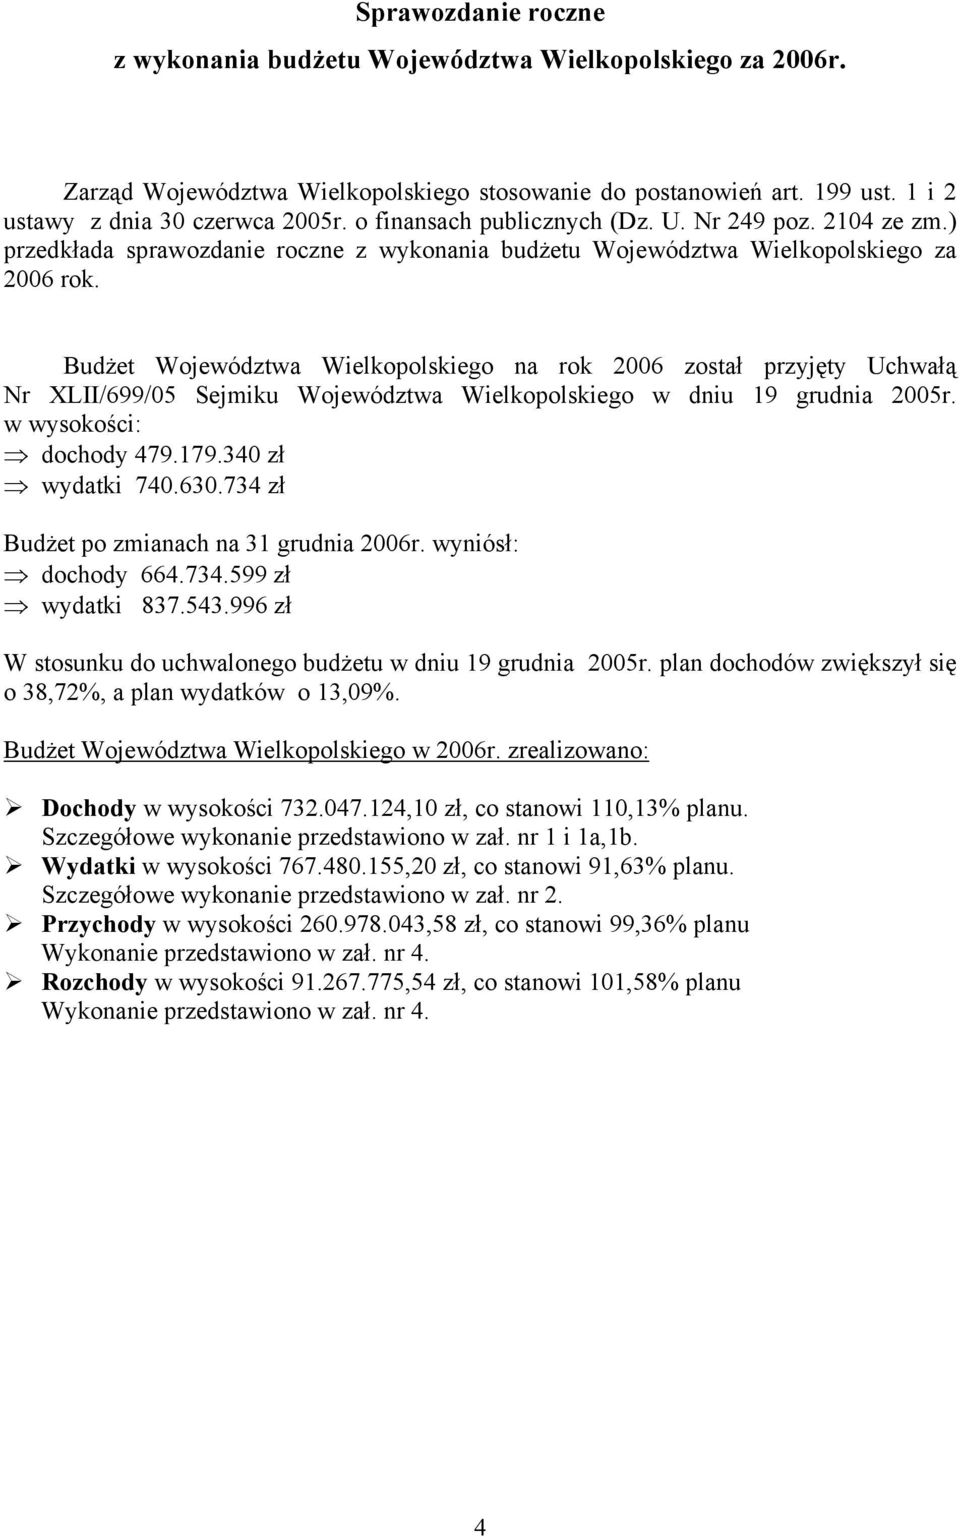 Budżet Województwa Wielkopolskiego na rok 2006 został przyjęty Uchwałą Nr XLII/699/05 Sejmiku Województwa Wielkopolskiego w dniu 19 grudnia 2005r. w wysokości: dochody 479.179.340 zł wydatki 740.630.